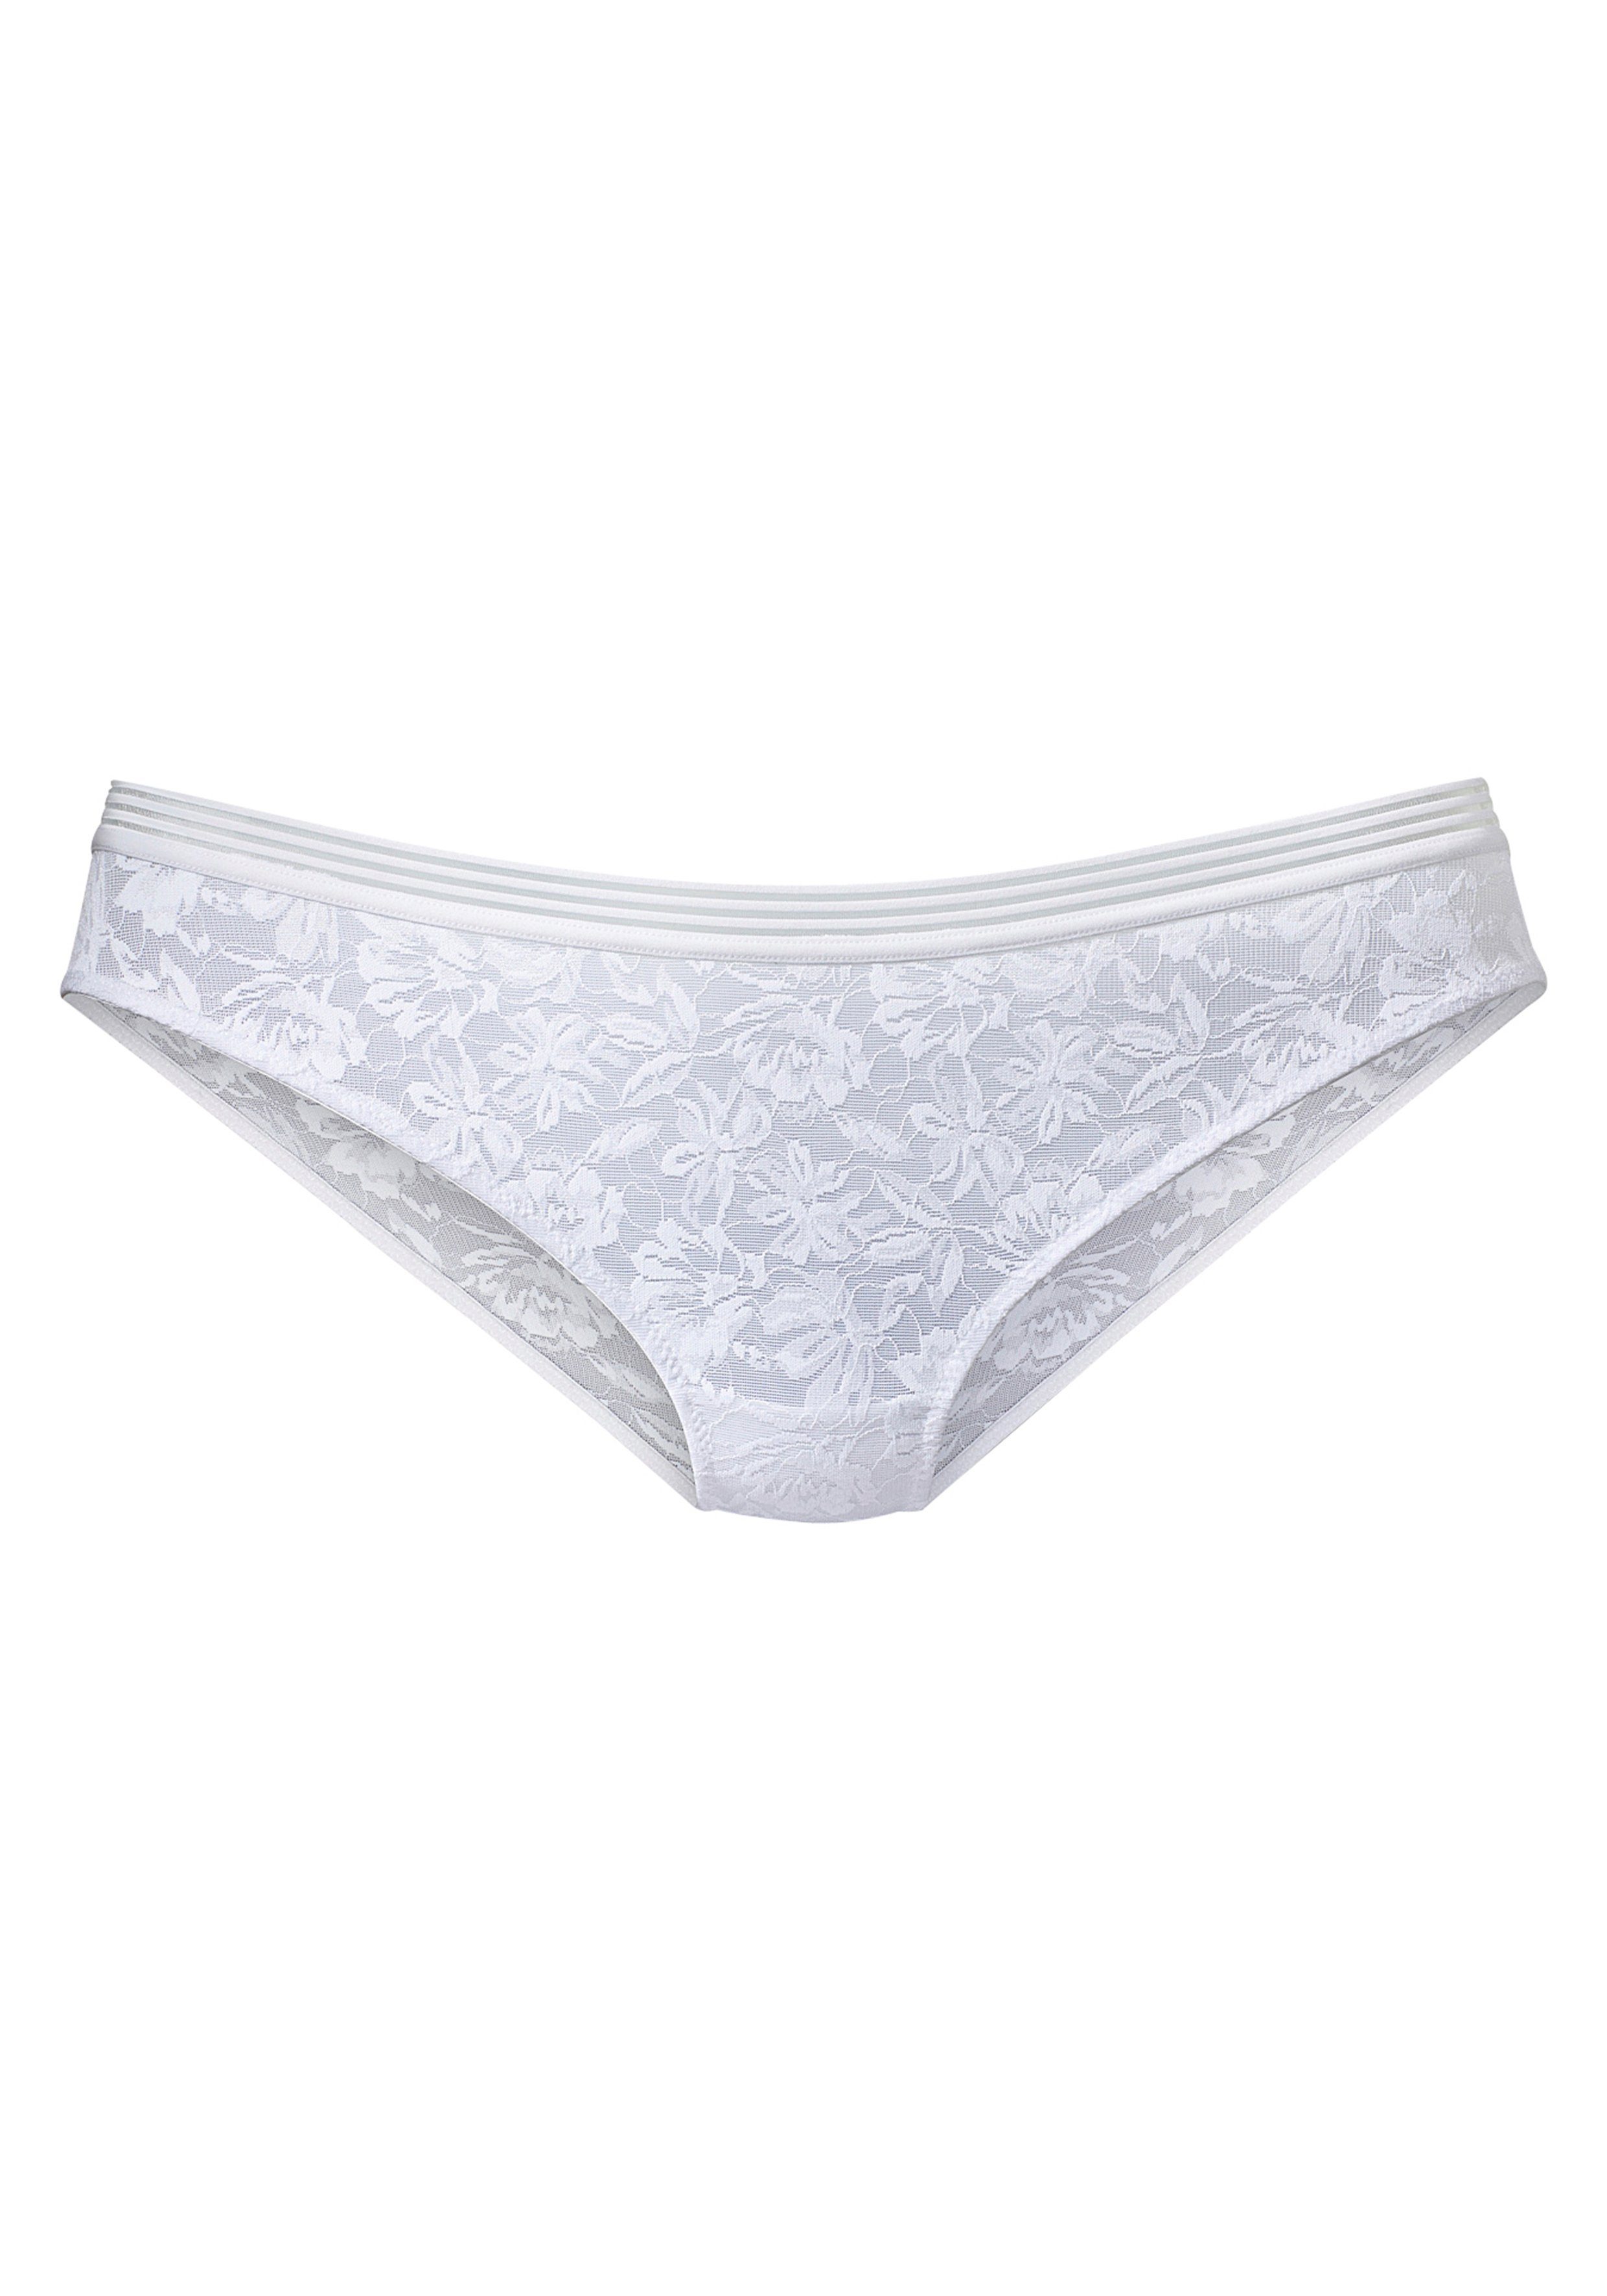 lascana bikinibroekje rondom van fijn kant in gebloemde look wit